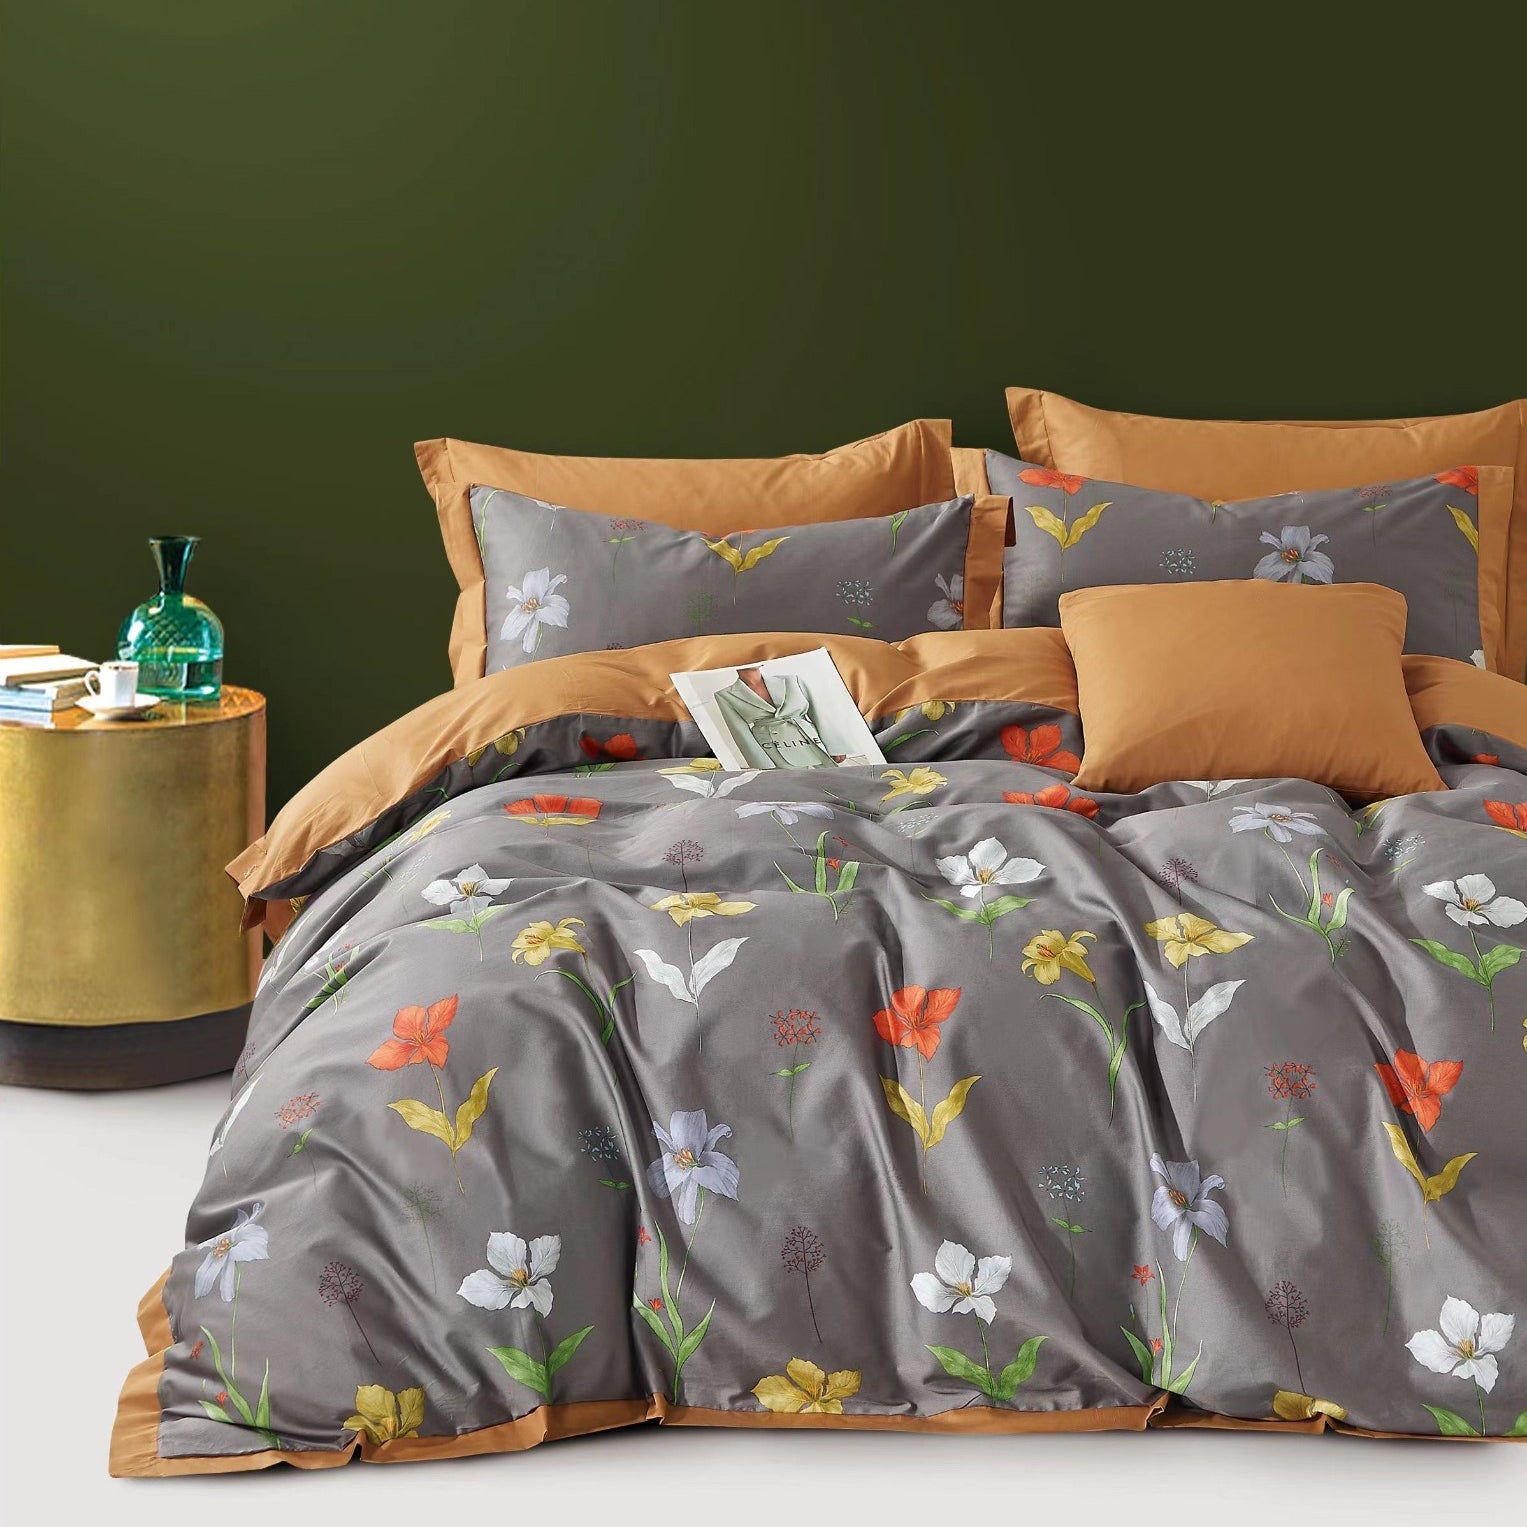 100% Pure Cotton 400 TC King Size Double Bedsheet Digital Print - 275 X 275 CM with 2 Pillow Covers - 3 Pcs Set